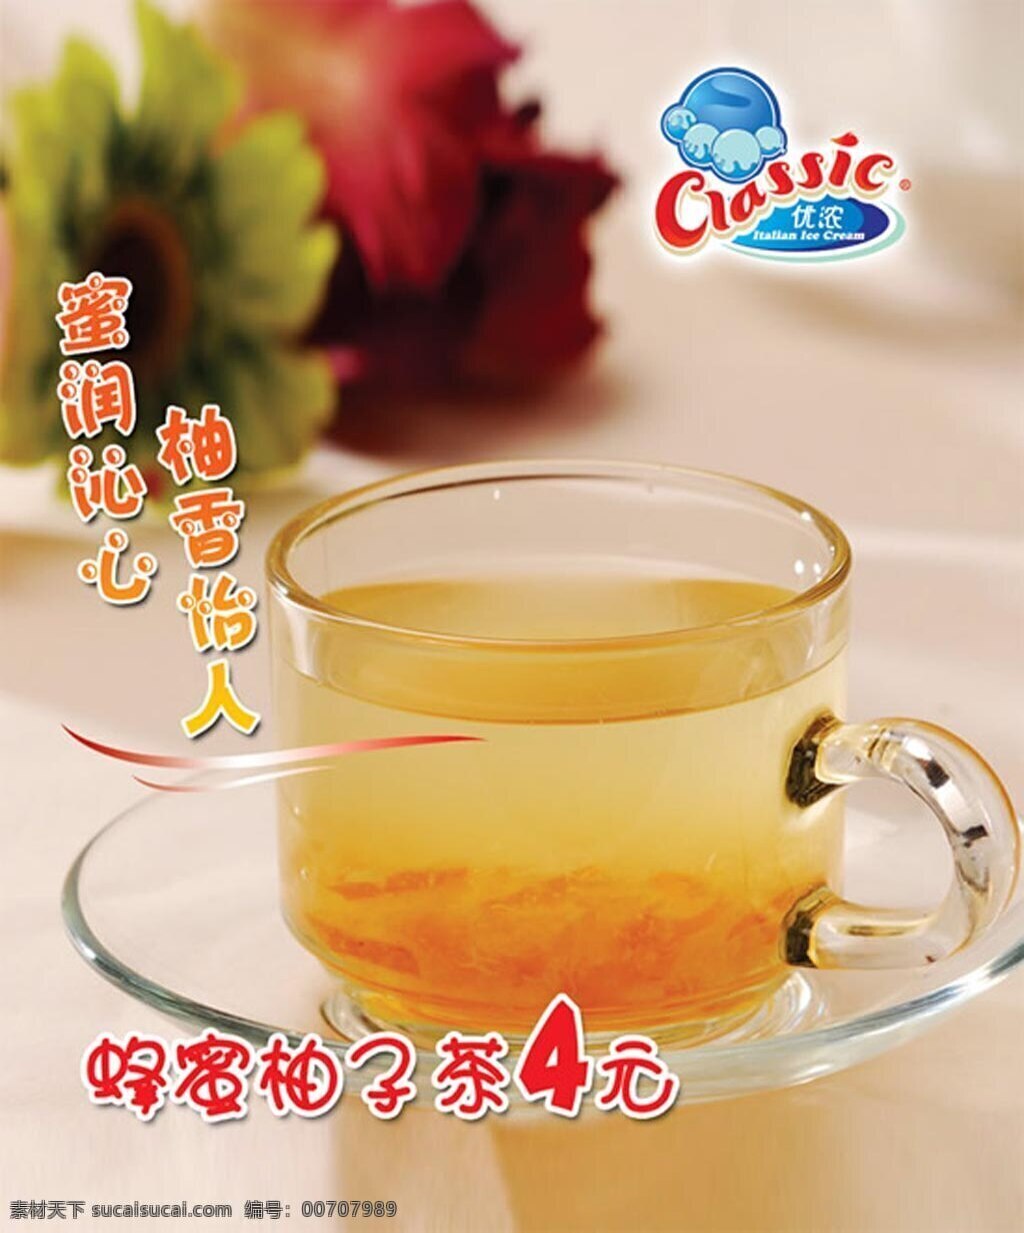 蜂蜜柚子茶 广告 蜂蜜 柚子 茶 黄色